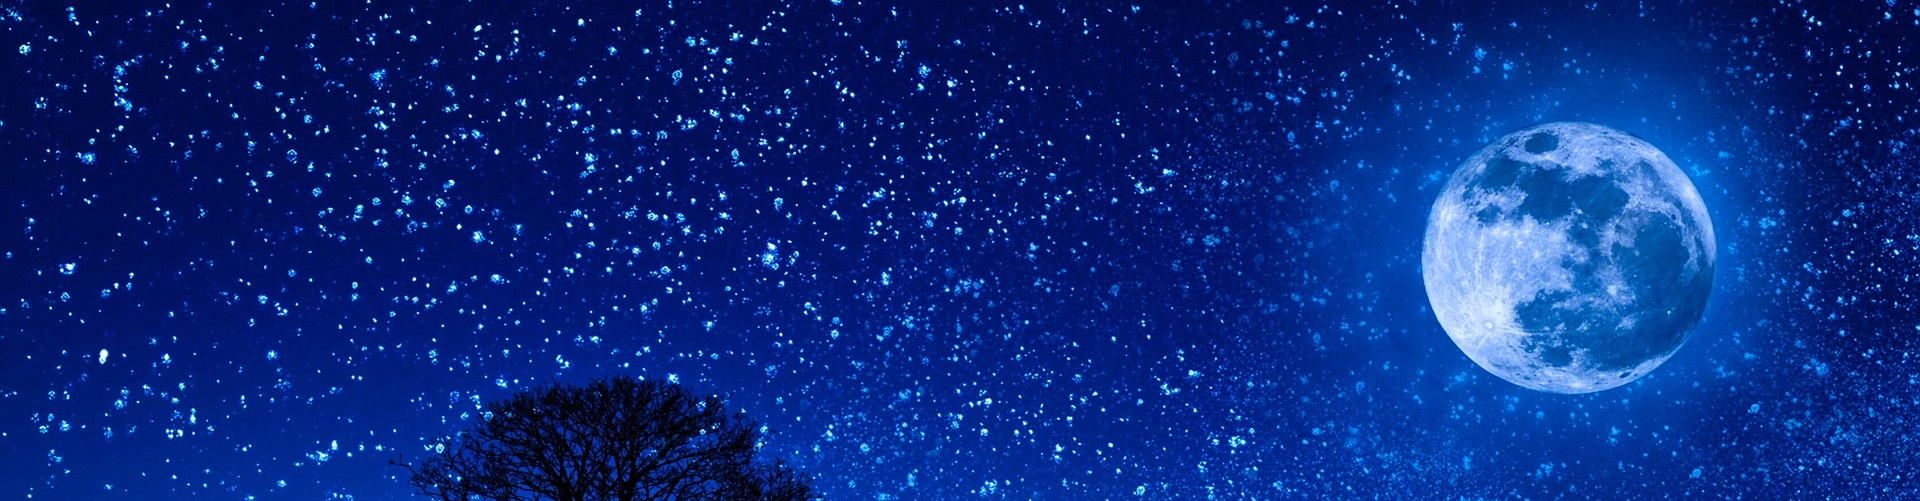 Blå natthimmel med stjärnor och måne.